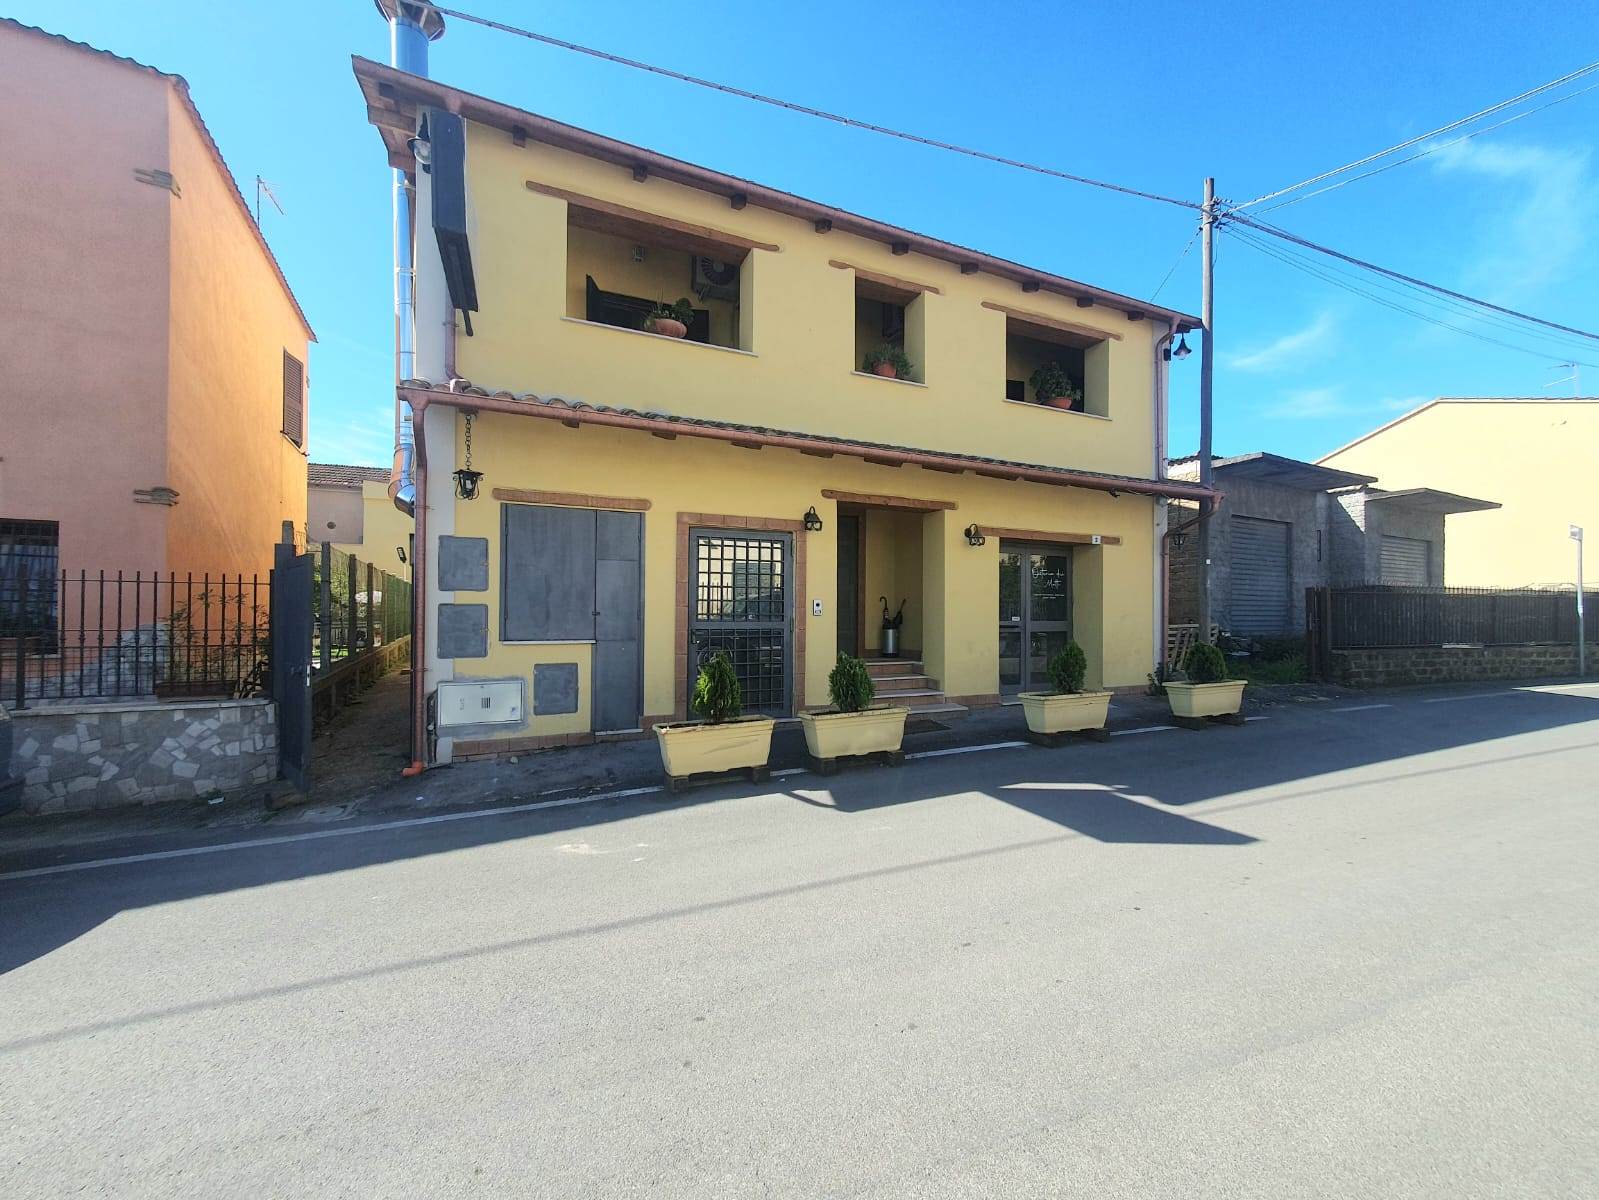 Appartamento in vendita a Fiano Romano, 5 locali, zona Località: CENTRO, prezzo € 195.000 | PortaleAgenzieImmobiliari.it